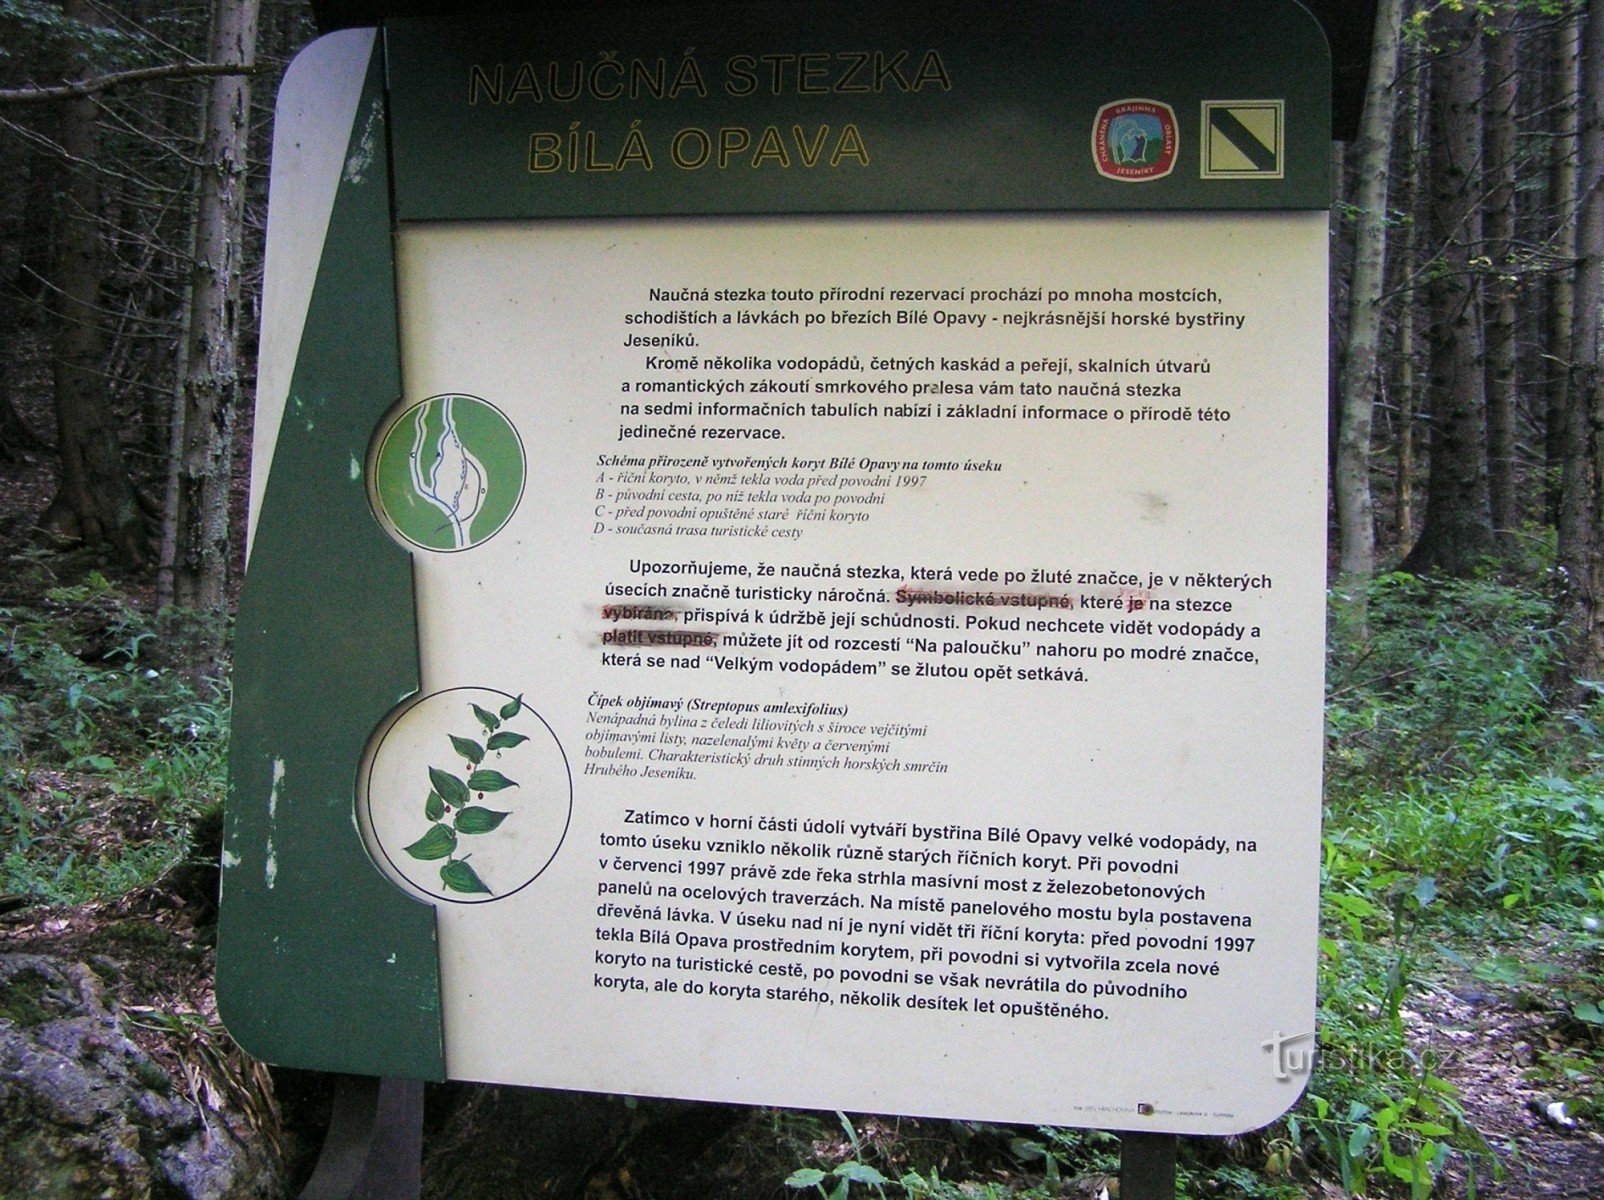 bảng thông tin ở cuối con đường giáo dục (bắt đầu từ Karlova Studánka)